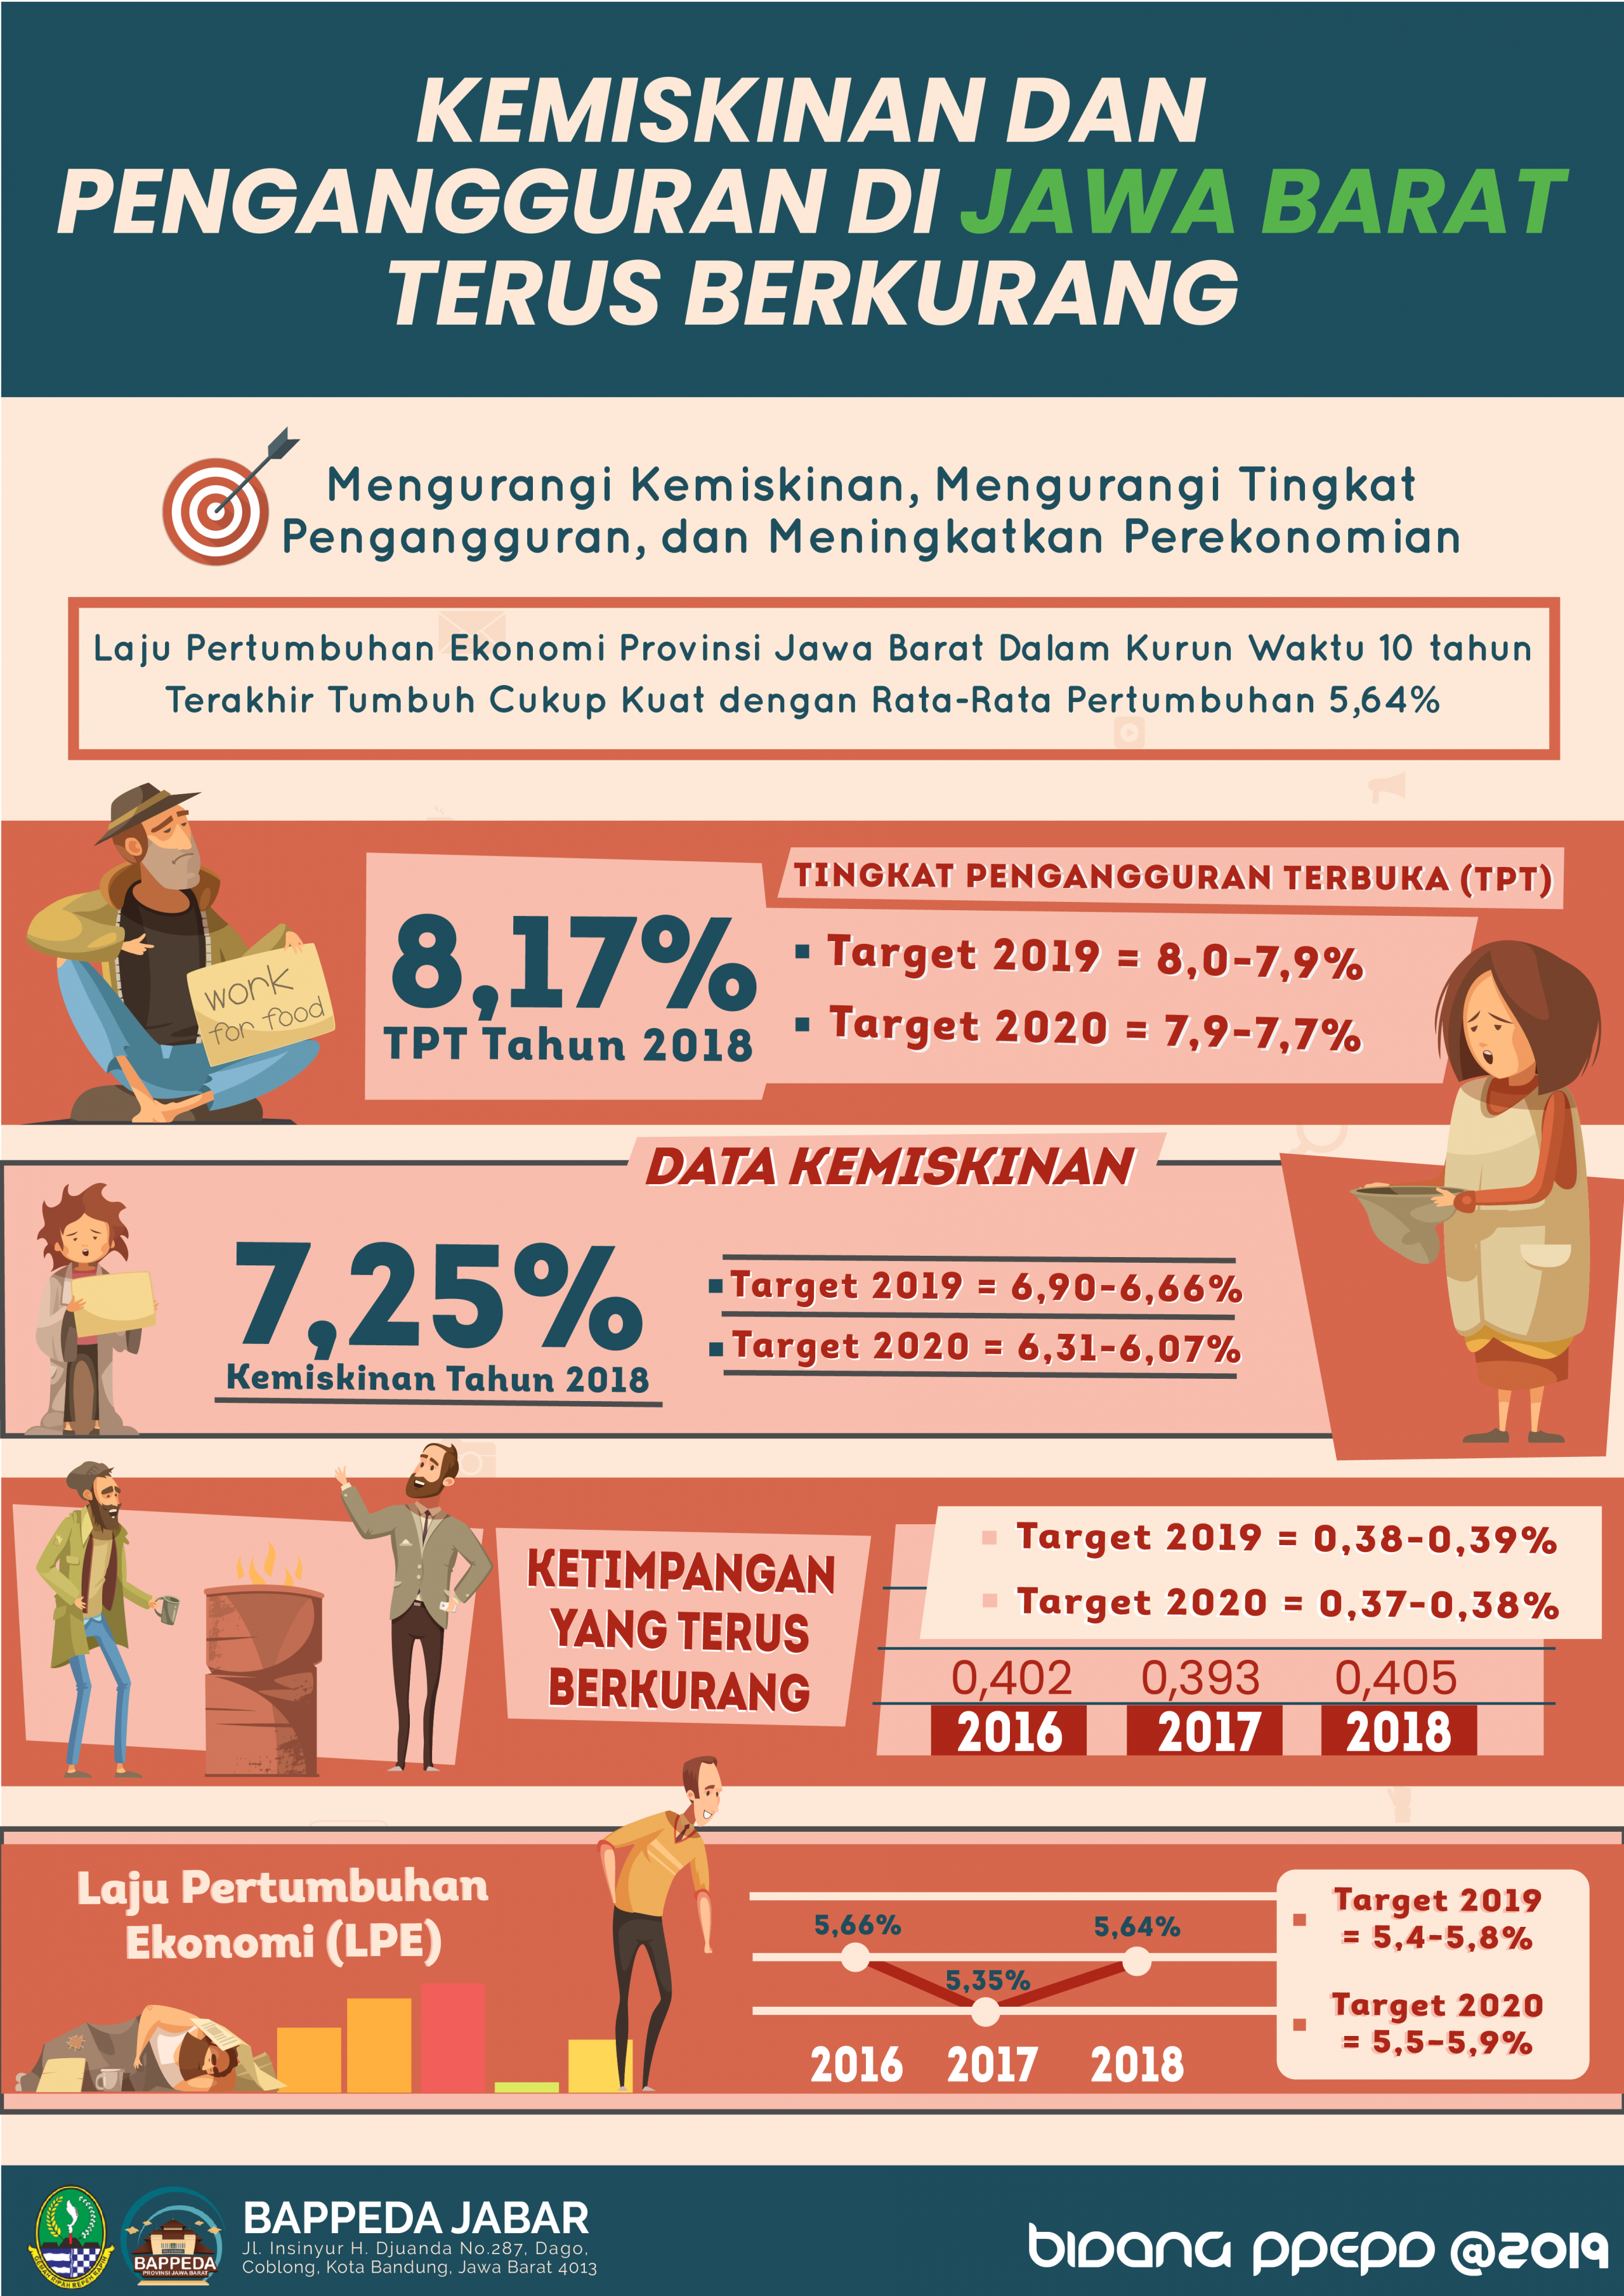 saberpungli jabar - Kemiskinan dan Pengangguran di Jawa Barat Terus Berkurang